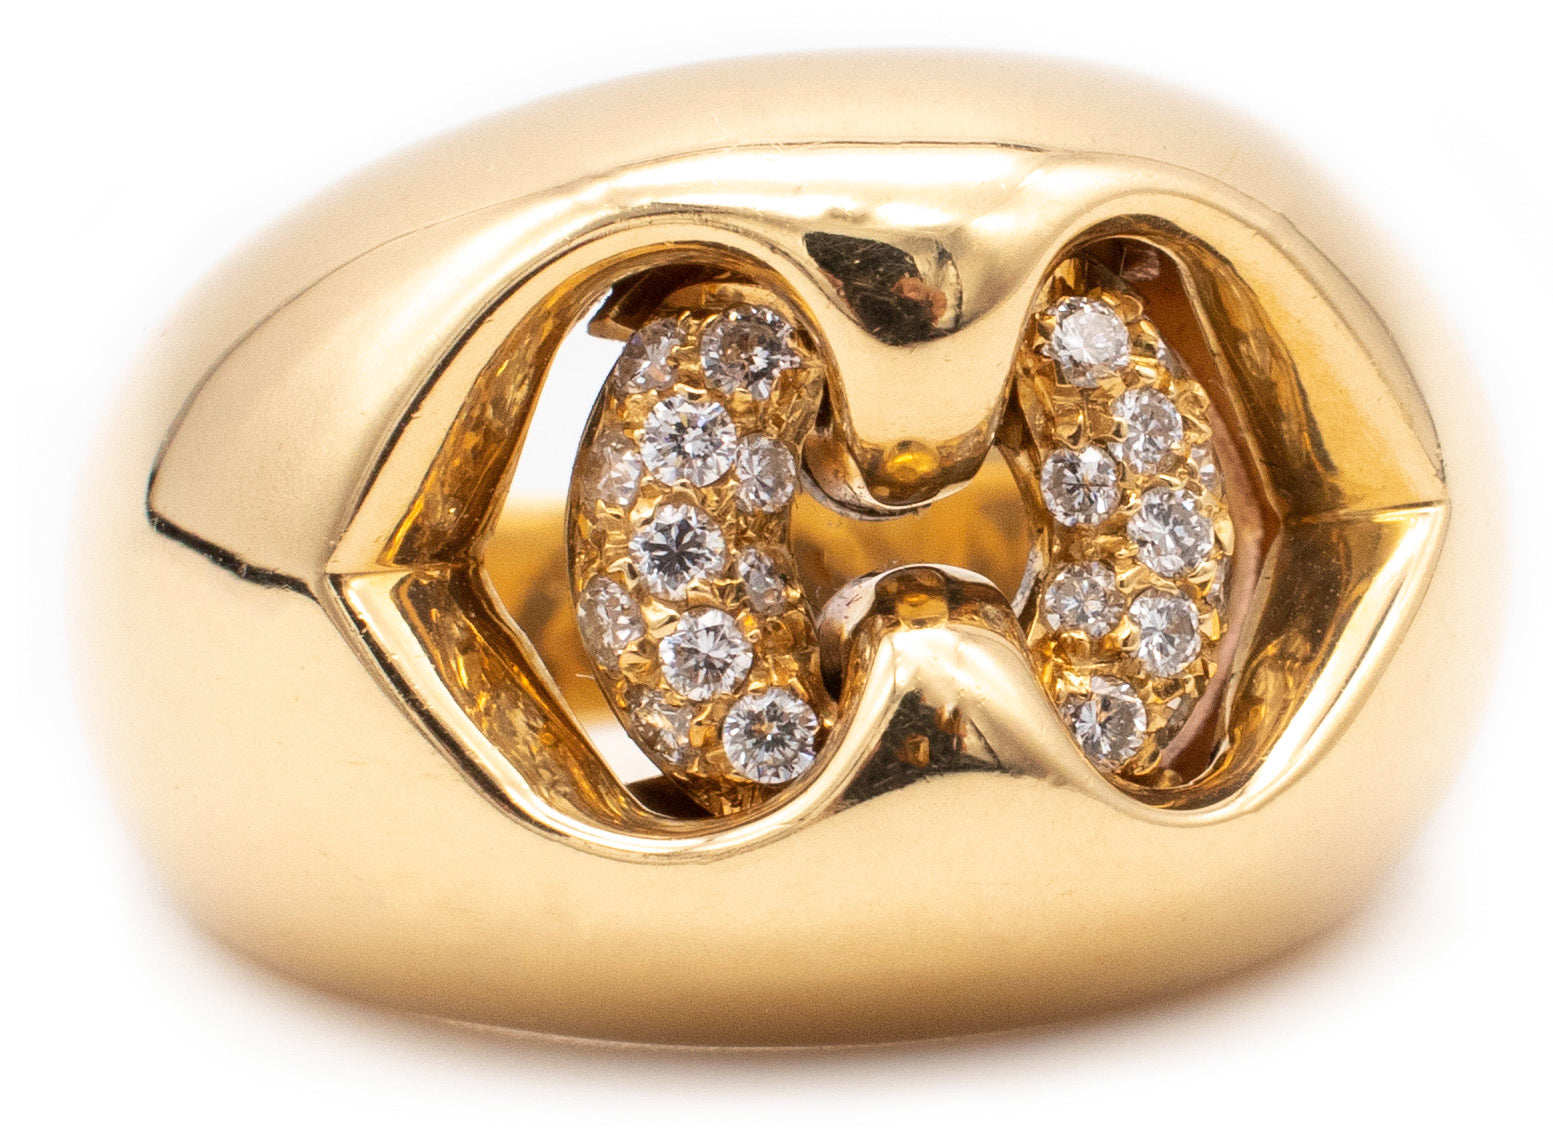 *Bvlgari Roma 18 kt gold Doppio Cuore collection ring with VS diamonds